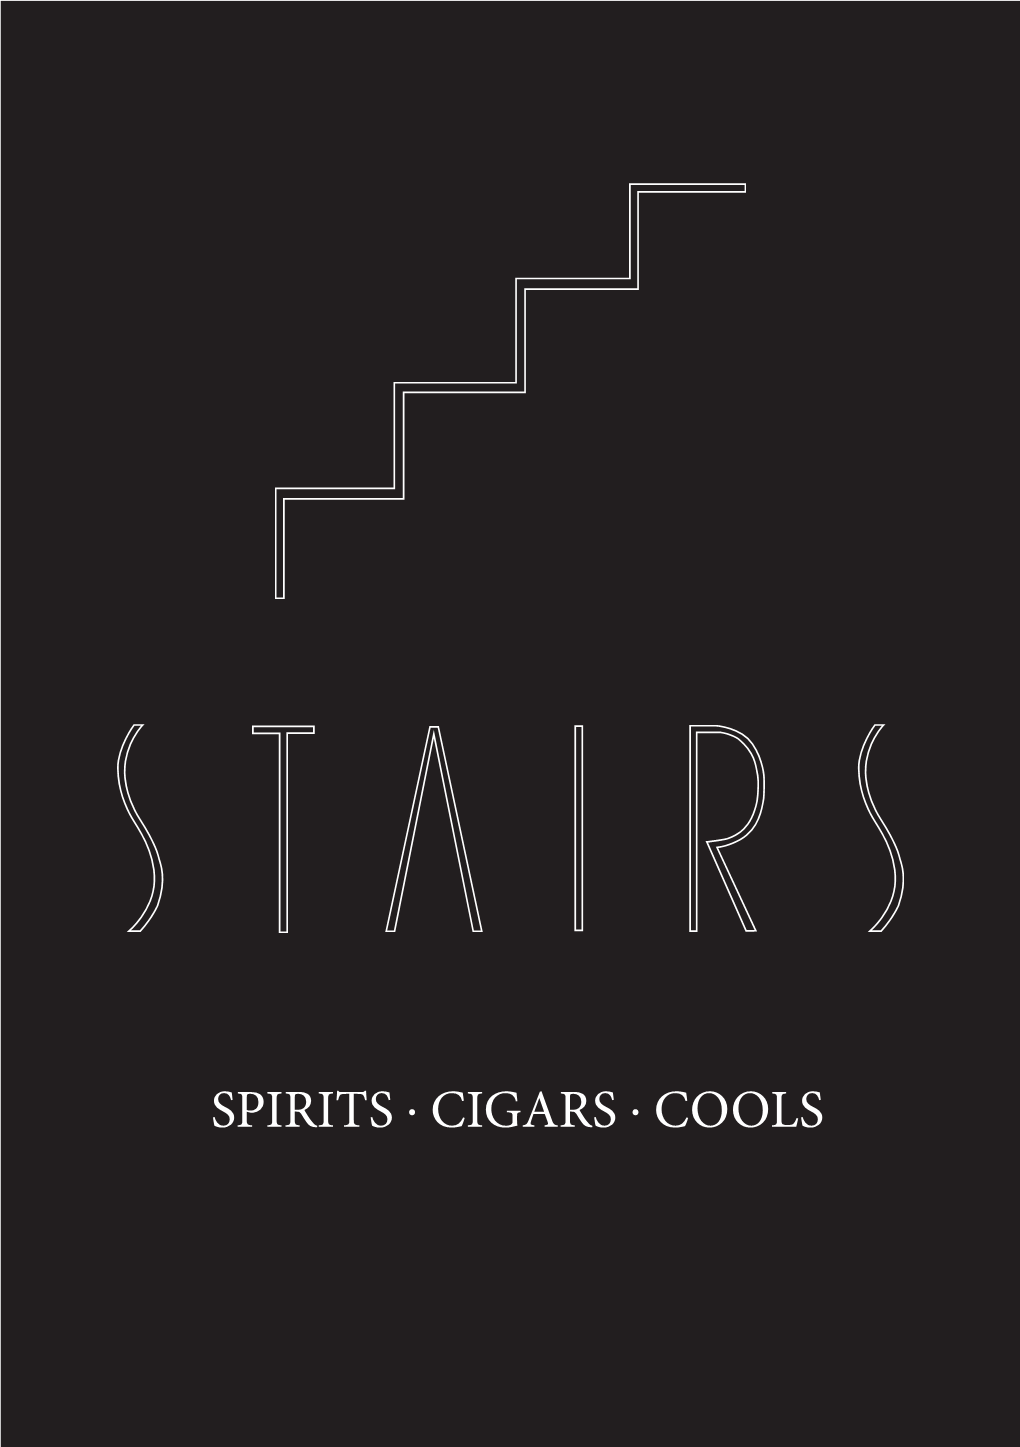 Spirits . Cigars . Cools